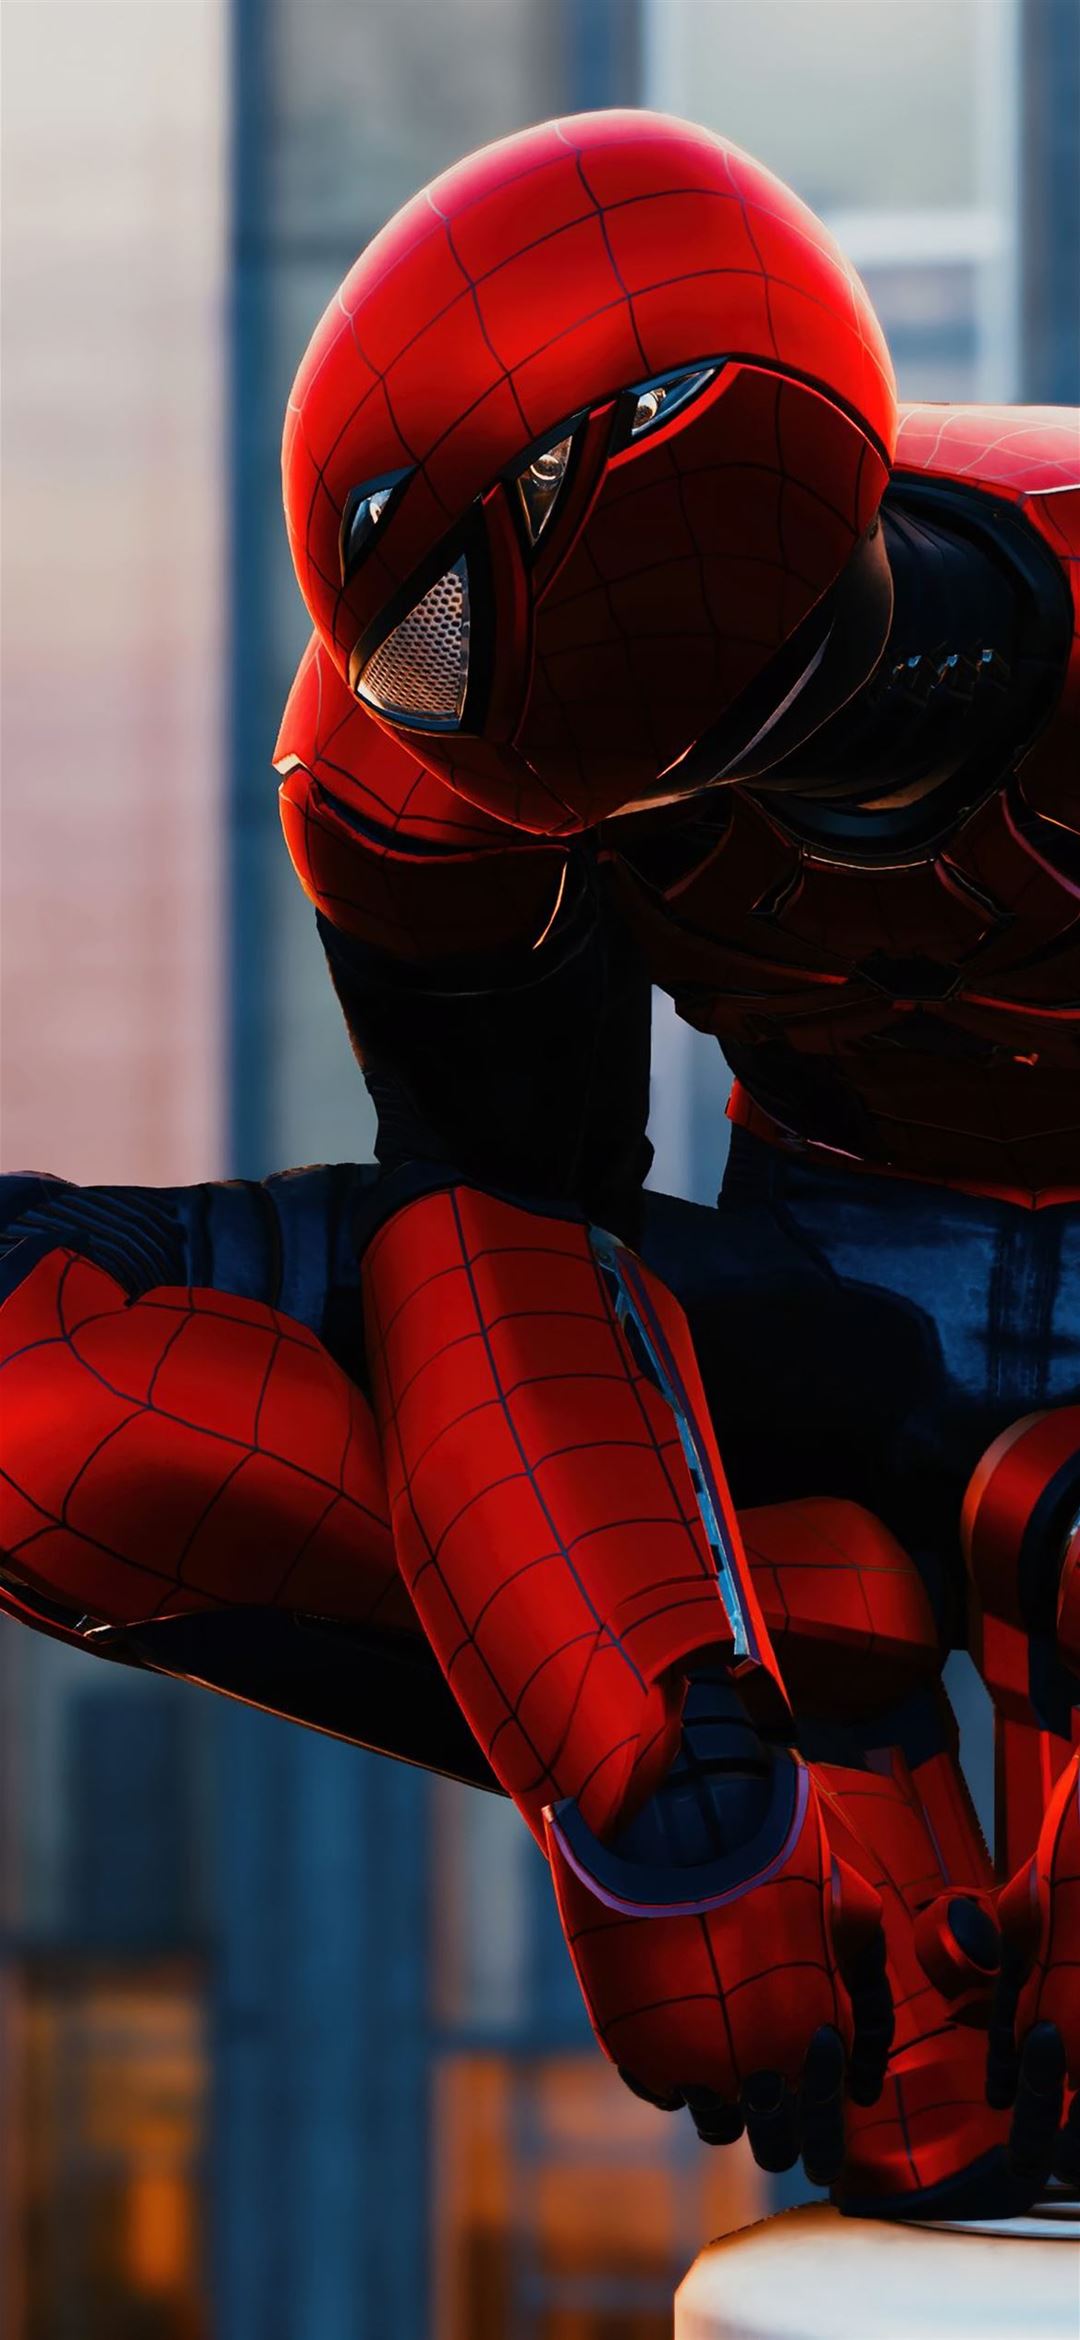 Với những ai yêu thích siêu anh hùng Spiderman, trò chơi Marvel Spiderman PS4 sẽ là sự lựa chọn hoàn hảo cho bạn. Hãy cùng trải nghiệm cuộc phiêu lưu đầy hấp dẫn theo chân Spiderman trong trò chơi này.